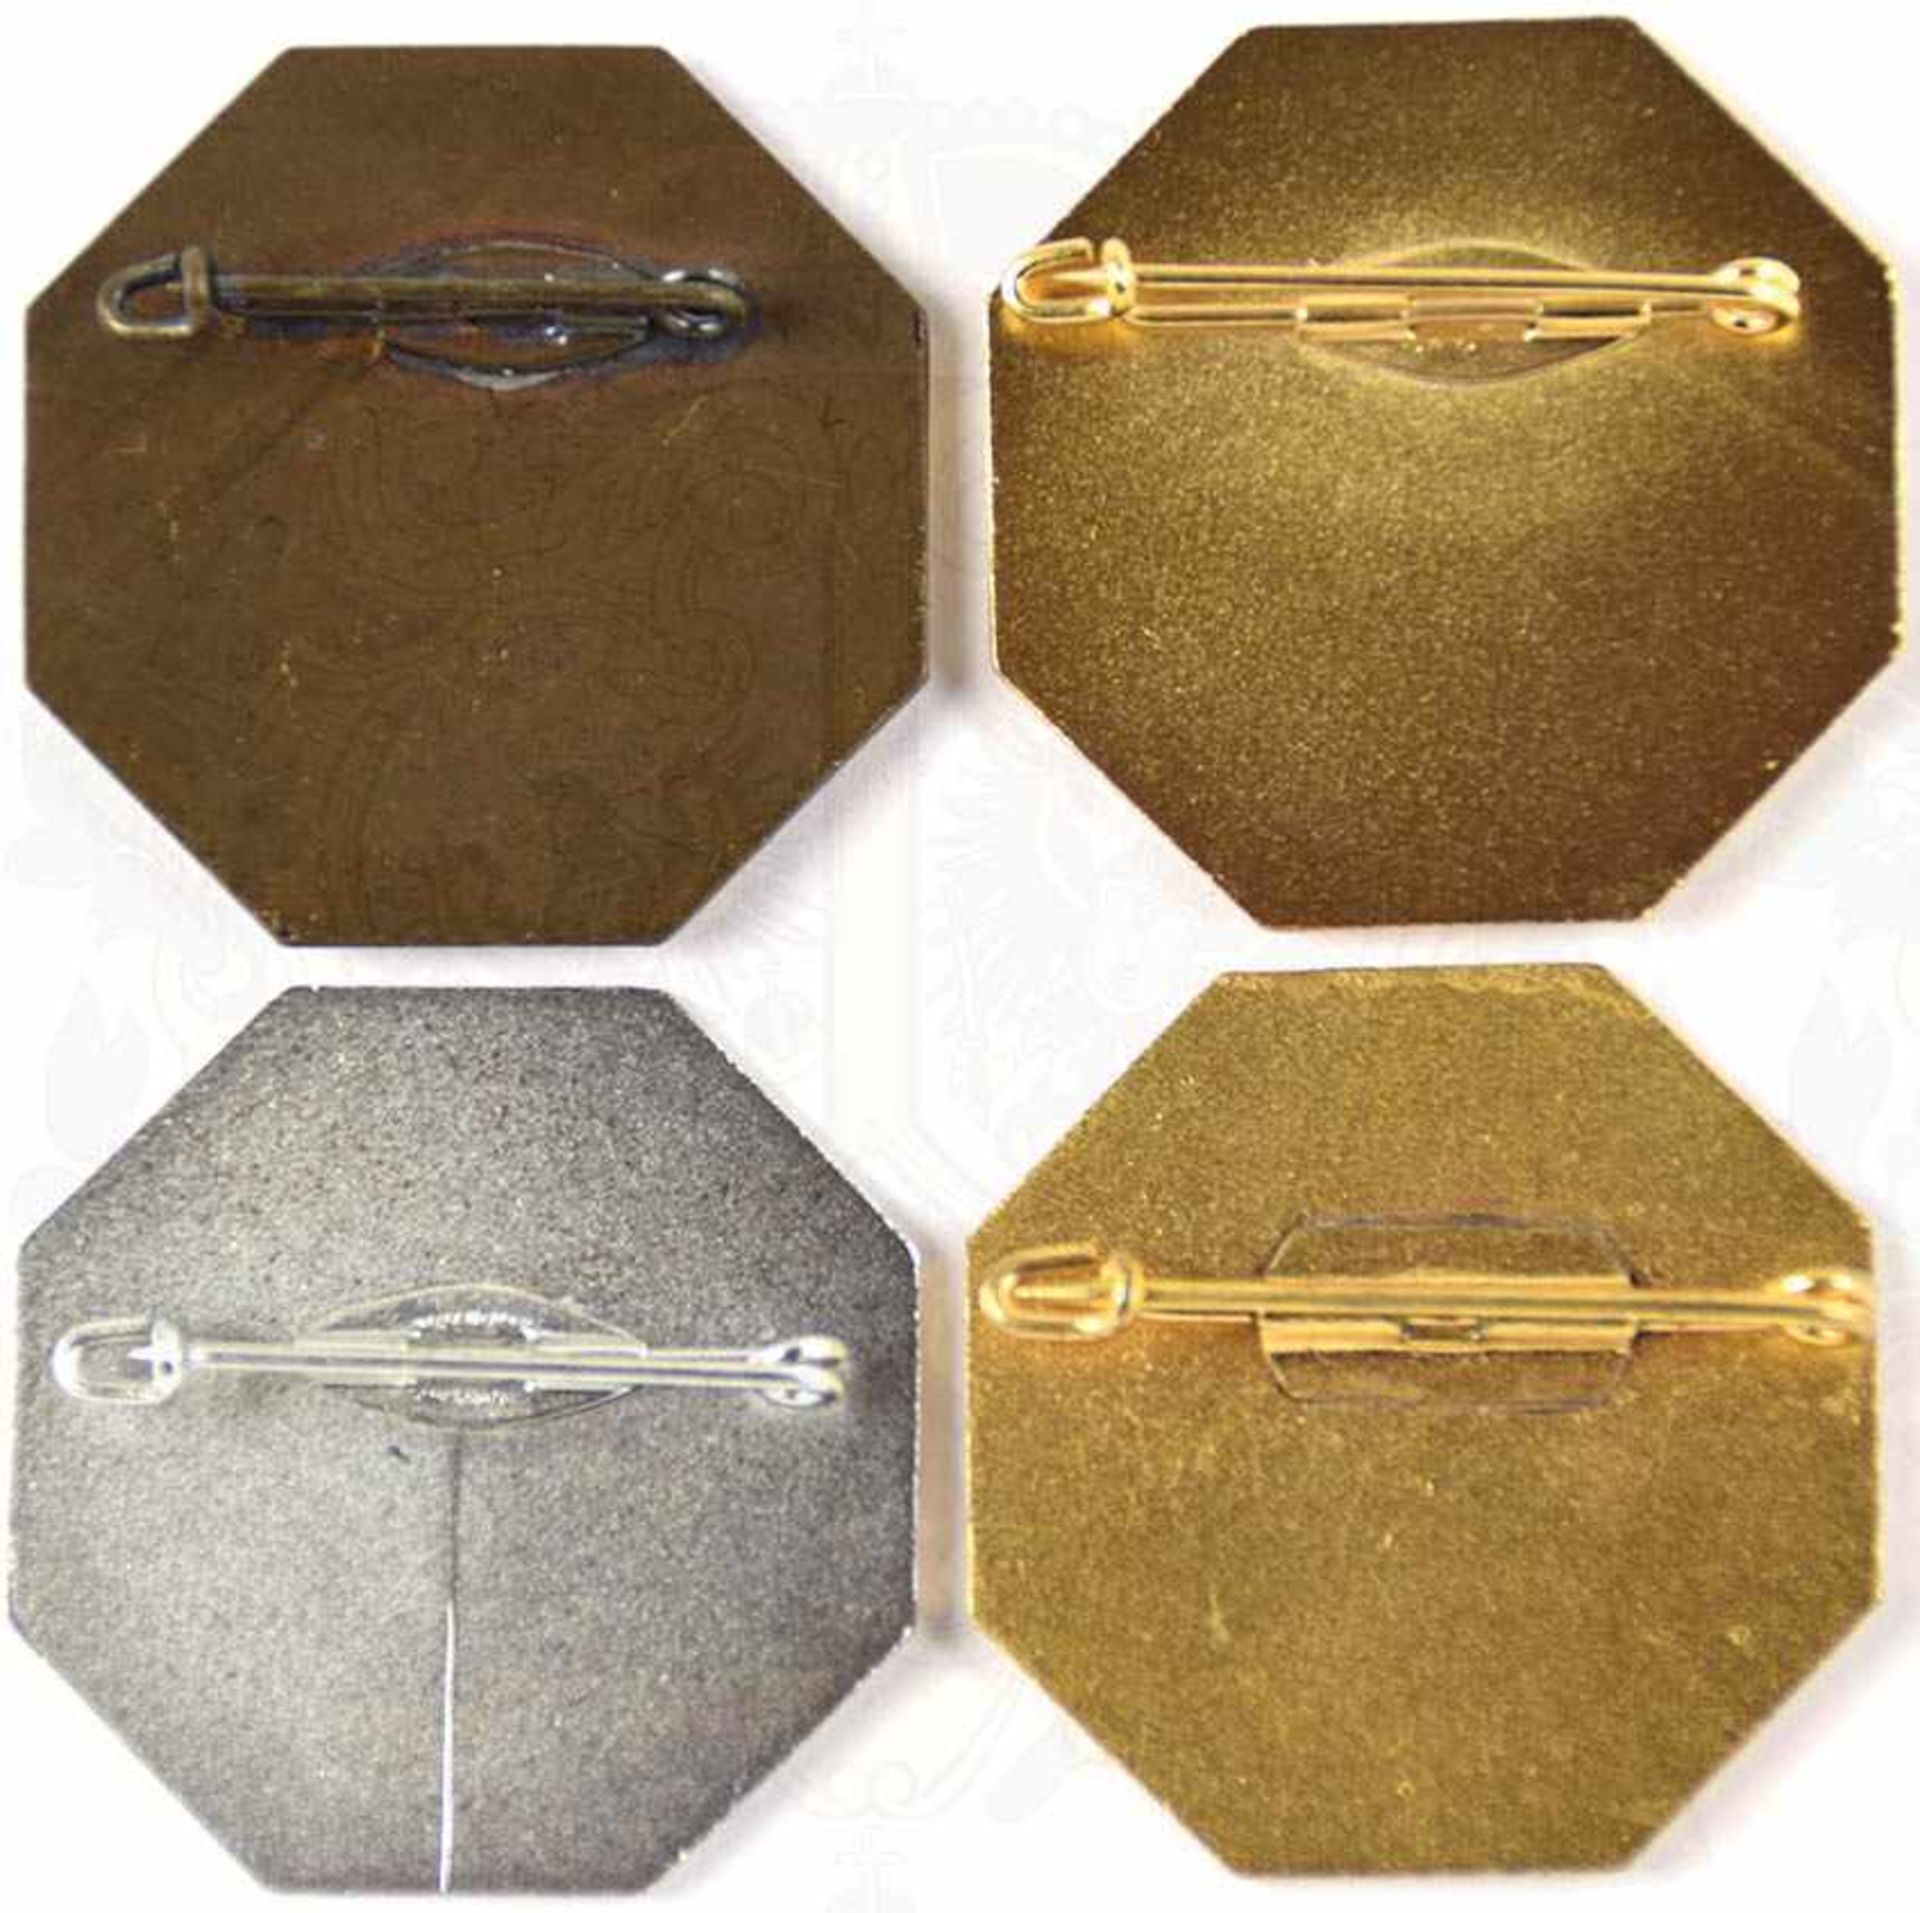 4 FEUERWEHR-LEISTUNGSABZEICHEN, Landes-FW-Verband Hessen, f. 25, 40 u. 2x 50 Jahre, Bronze, Silber - Bild 2 aus 2